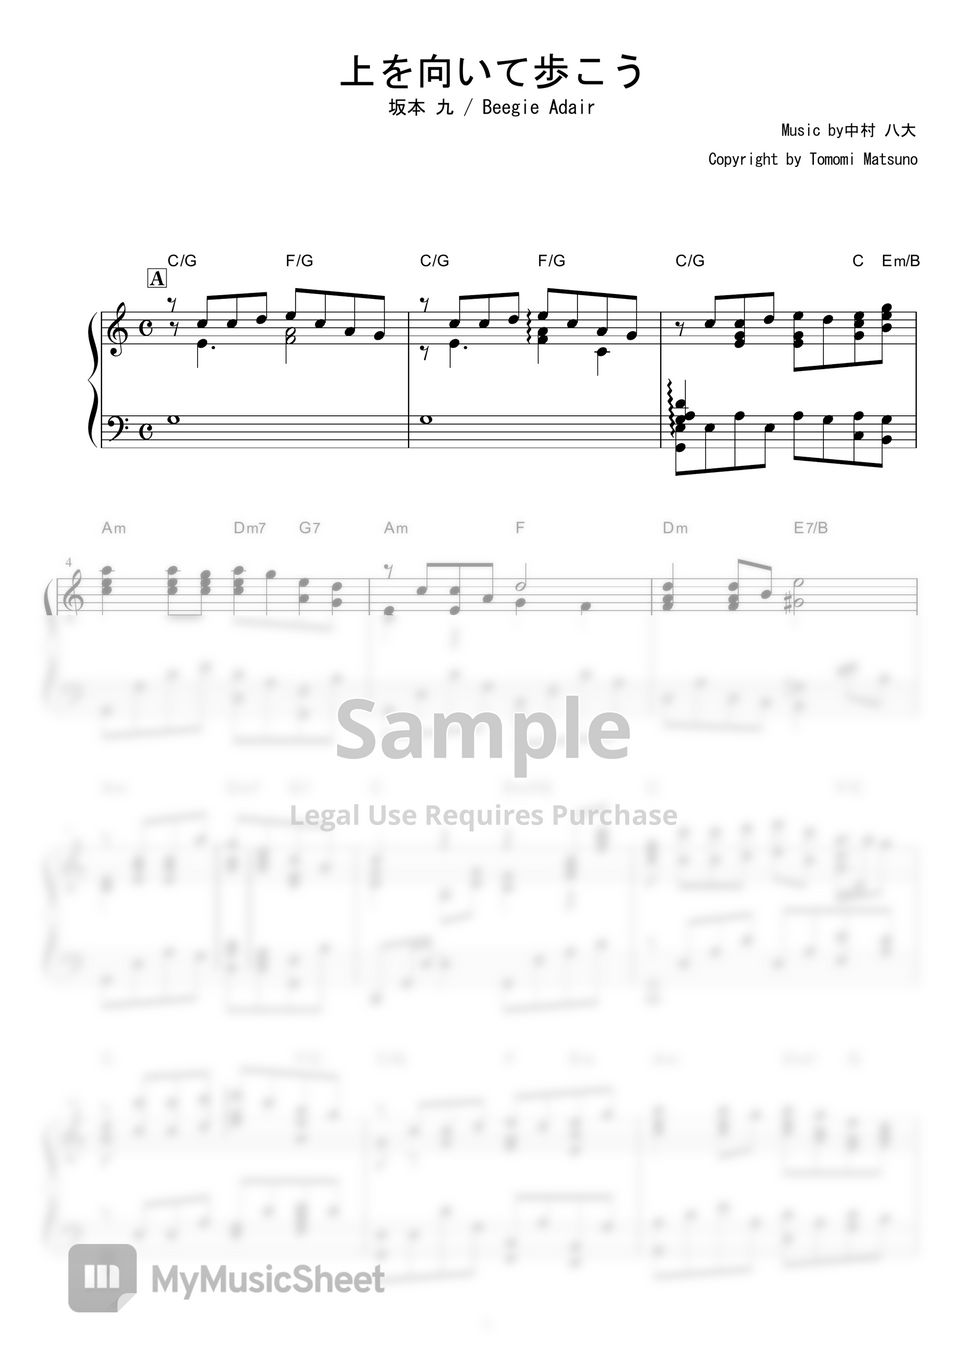 坂本九 - 上を向いて歩こう (Jazz ver.（Beegie Adair)) Sheets by piano*score